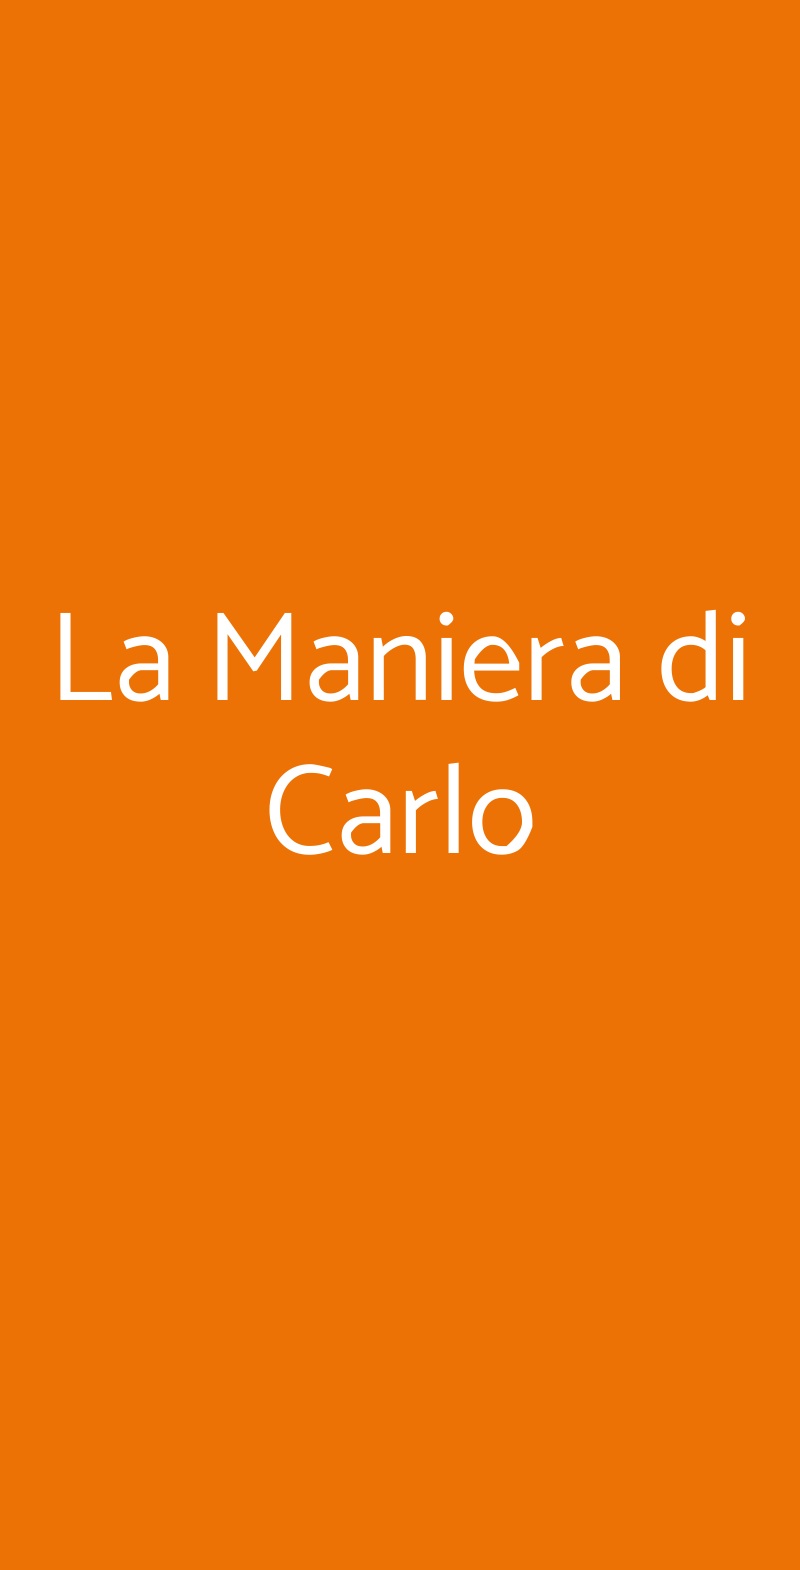 La Maniera di Carlo Milano menù 1 pagina